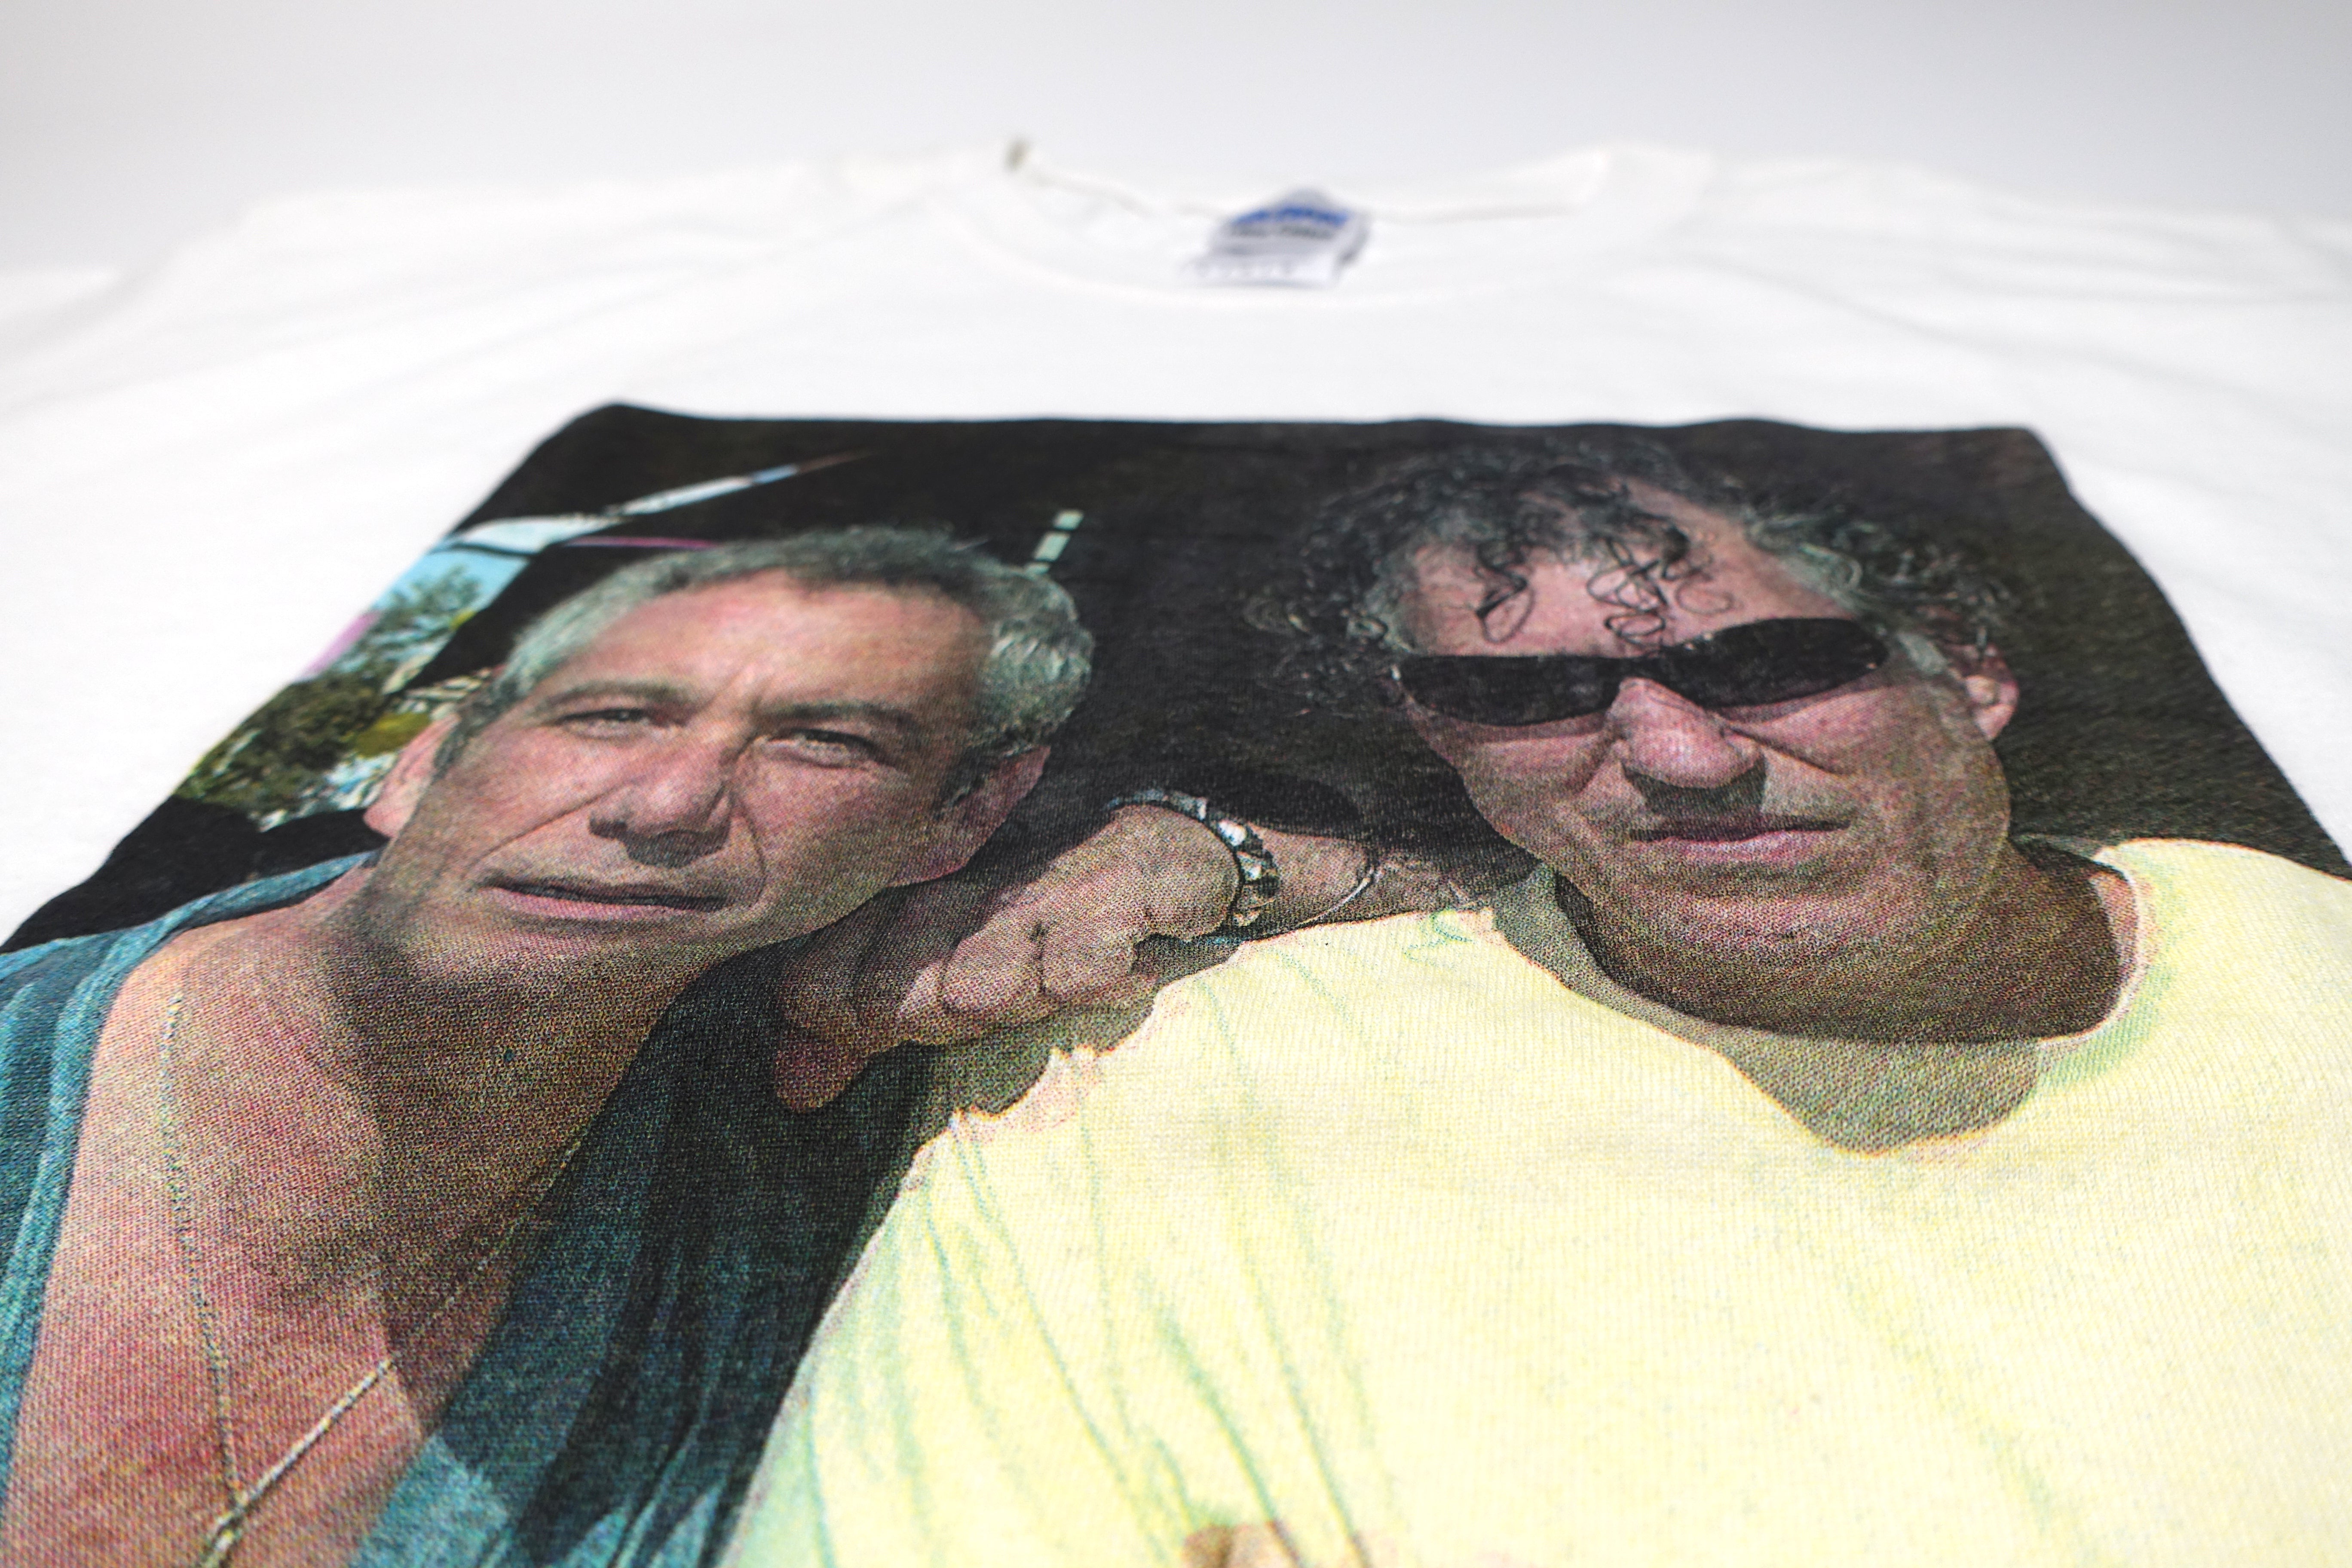 Mike Watt & Raymond Pettibon - Photo Shirt Size Large